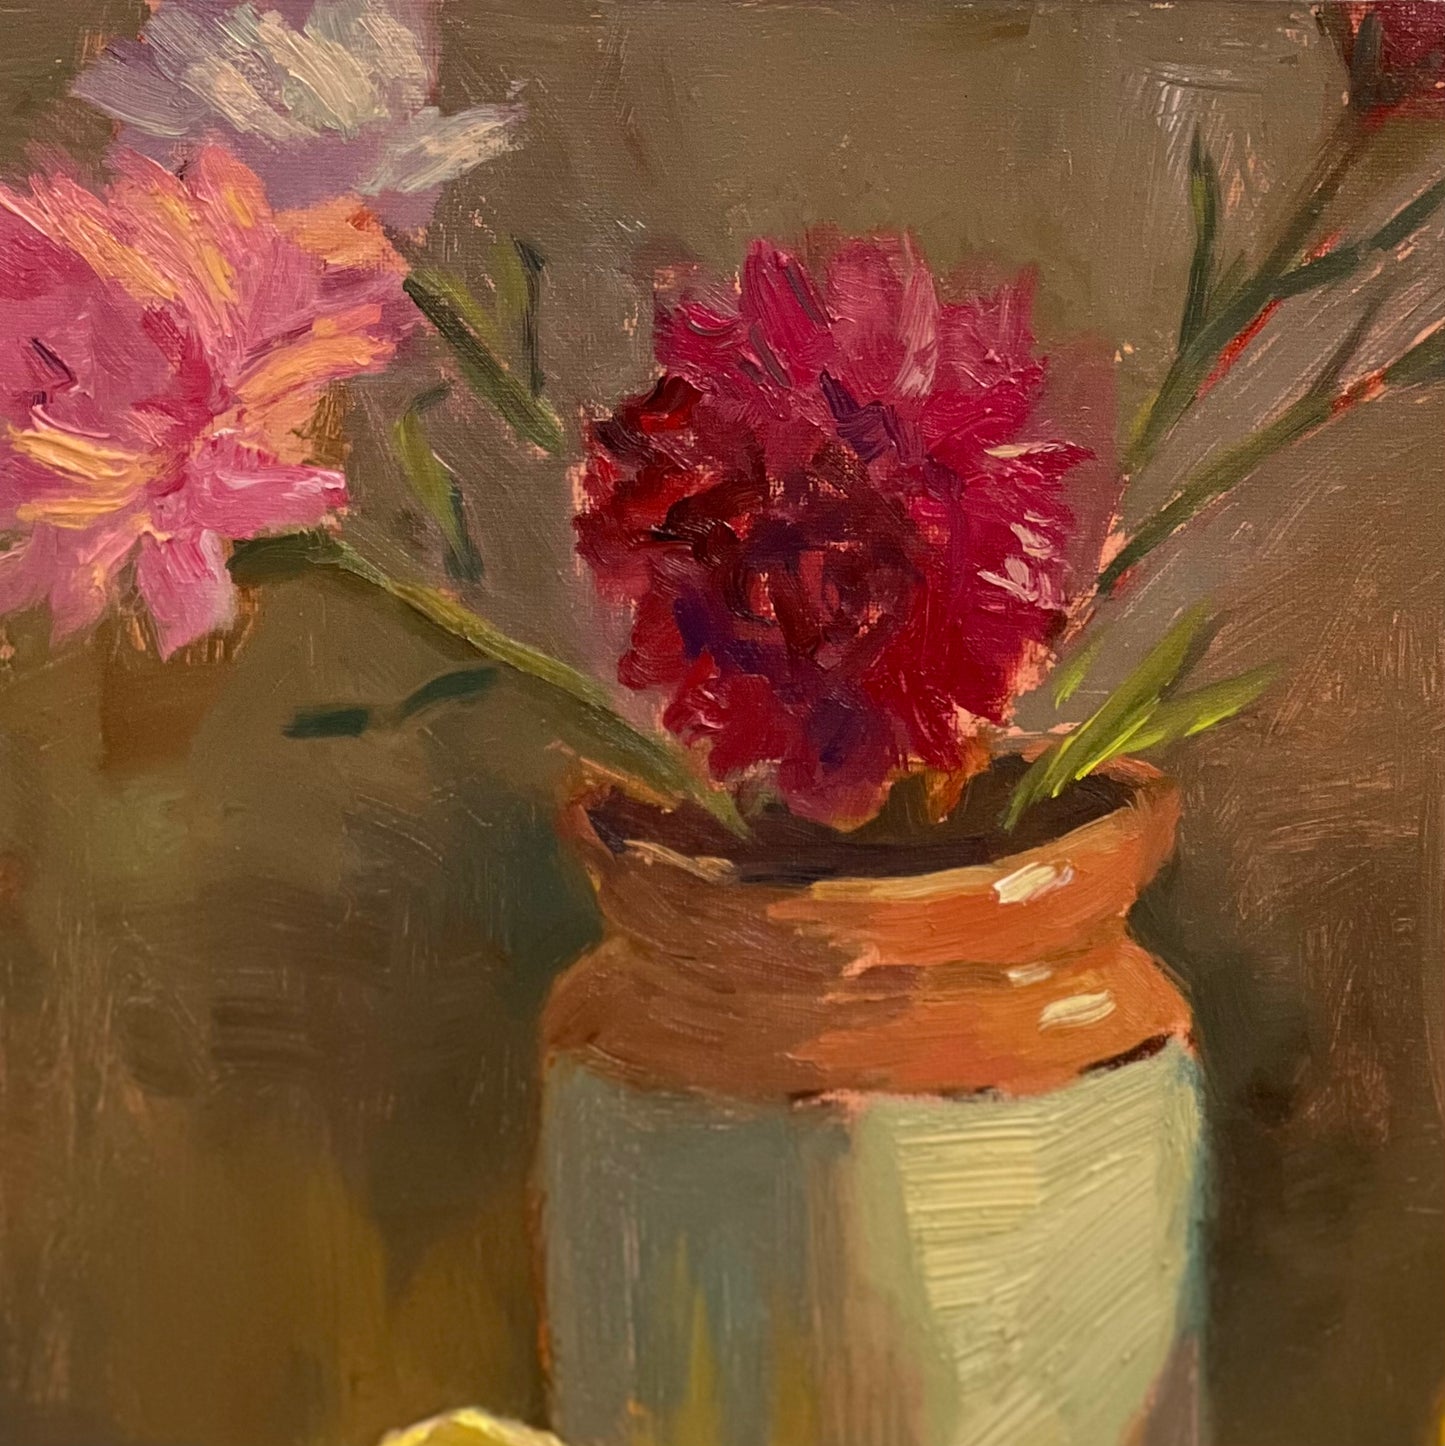 Sunlit jar of flowers and lemons - still life oil painting